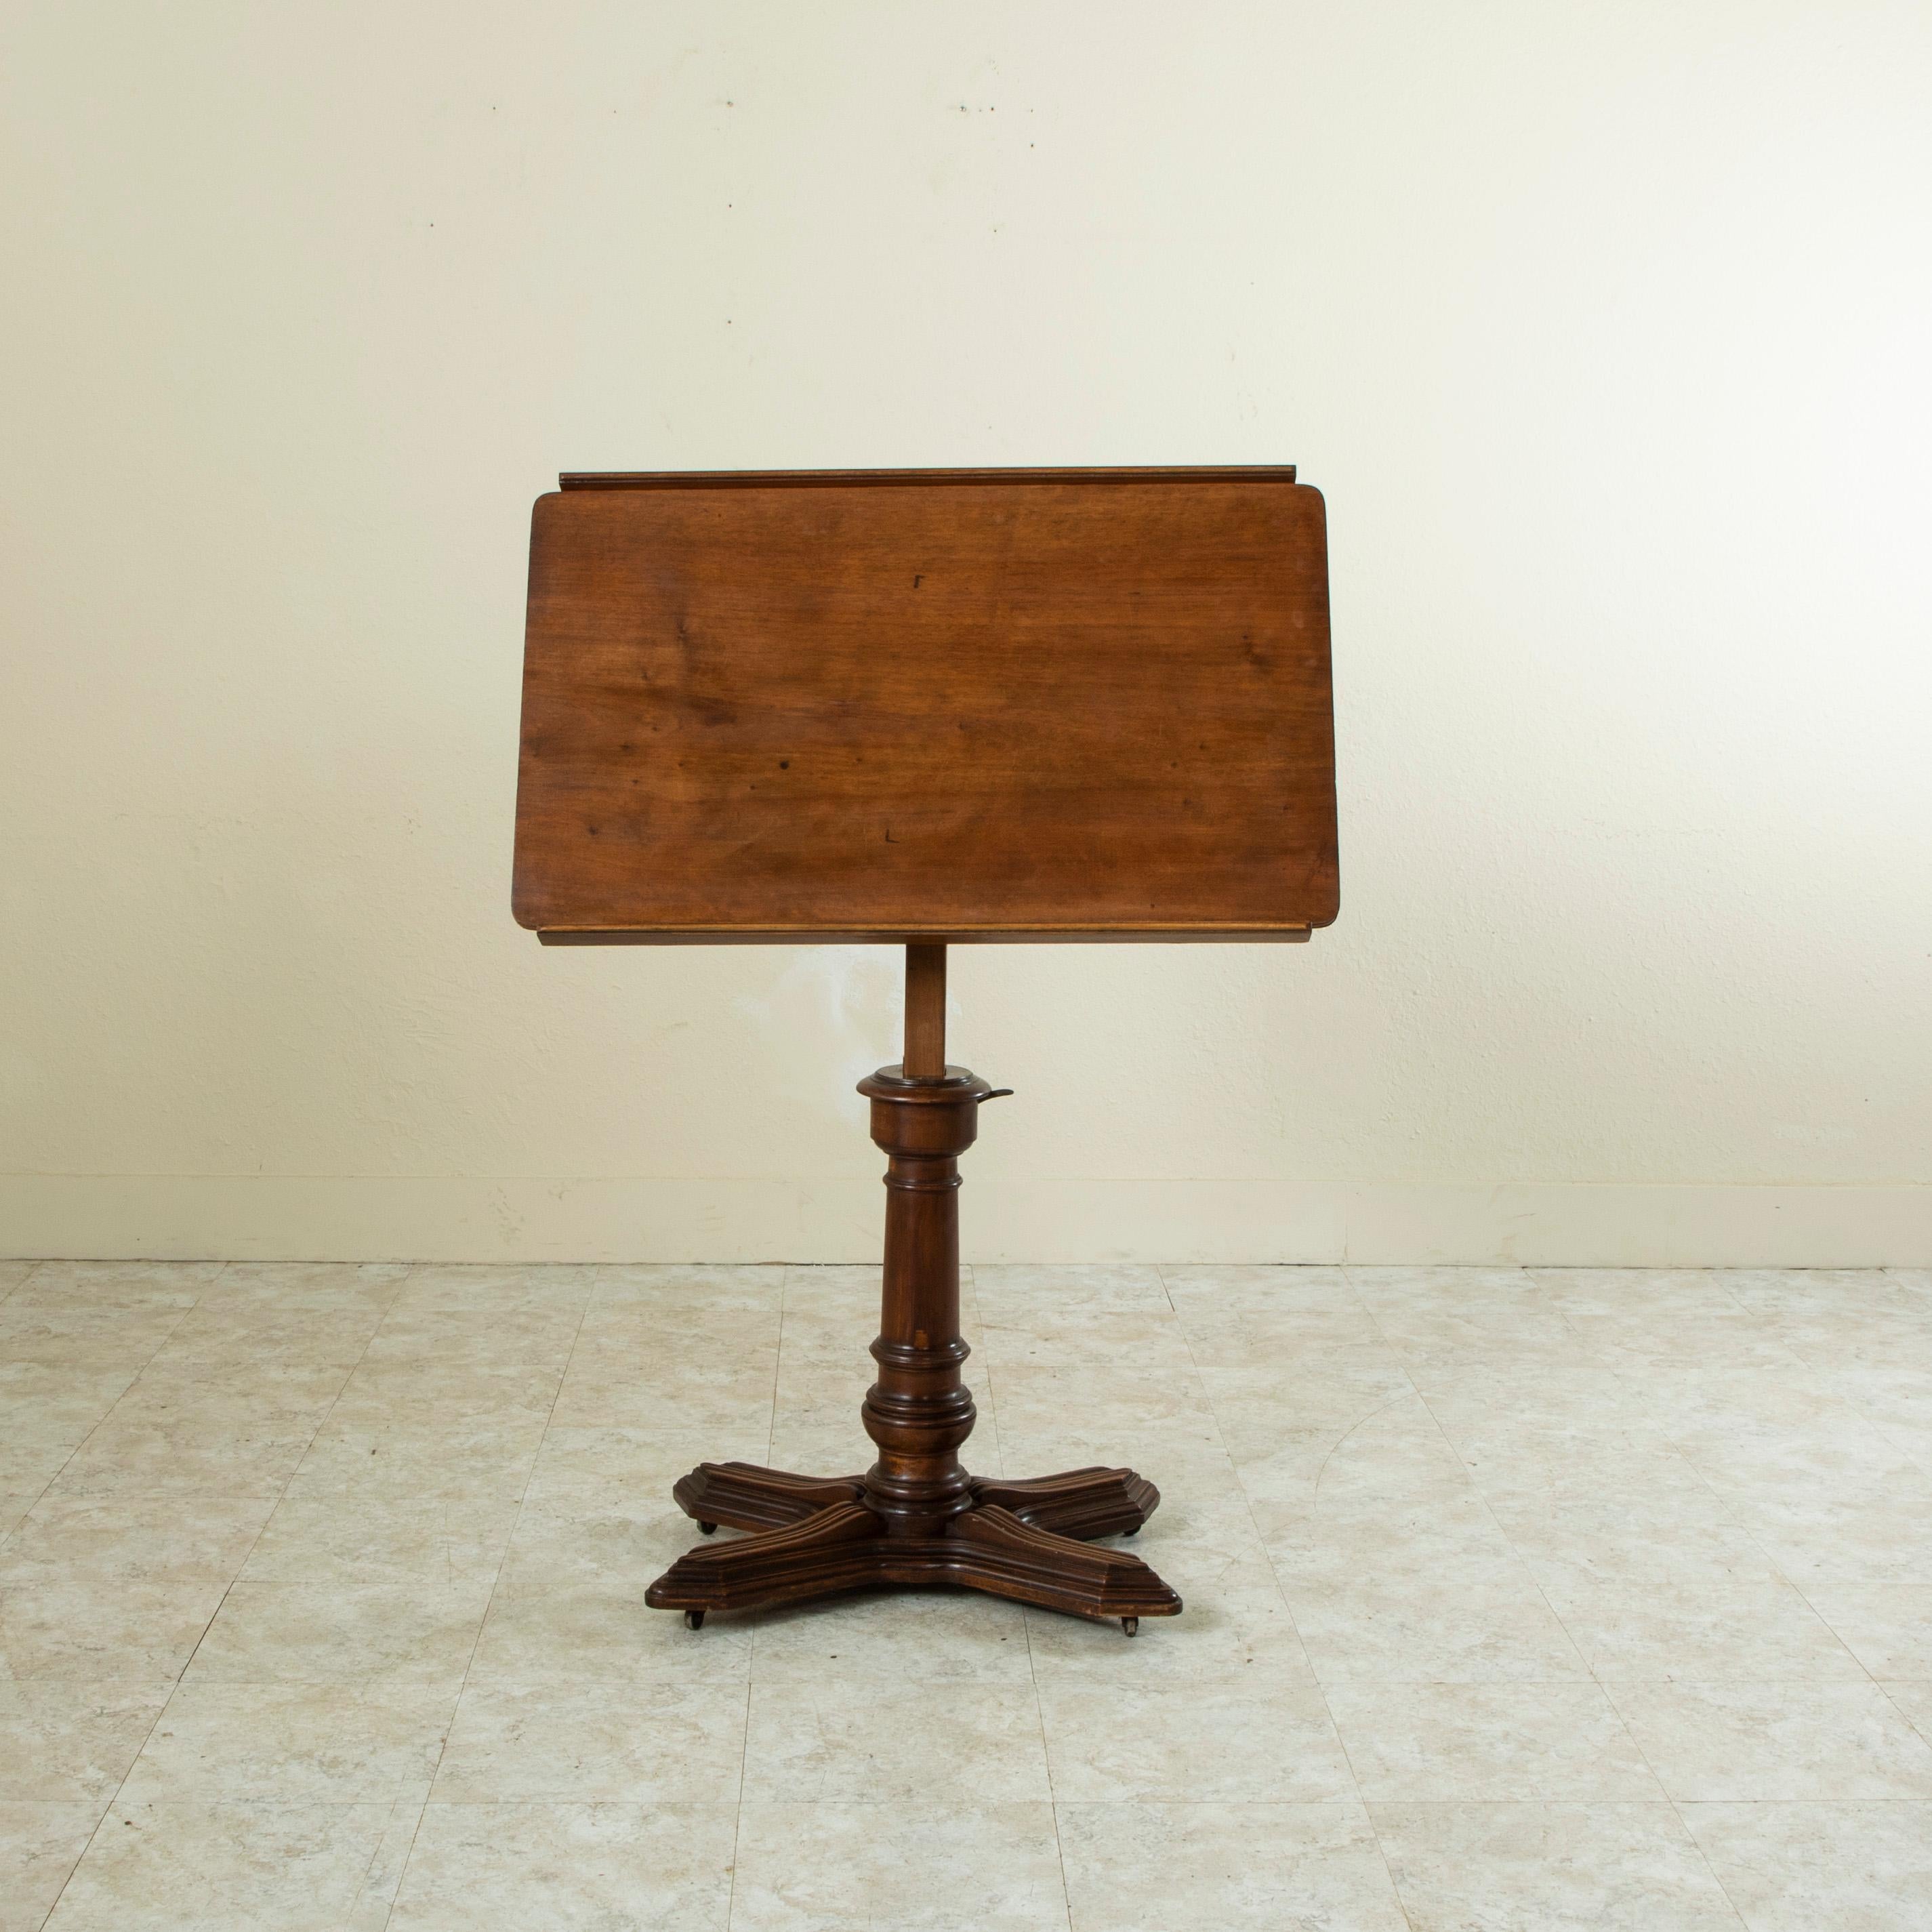 Cette table à dessin d'architecte réglable en noyer français de la fin du XIXe siècle porte l'étiquette du fabricant, E. Chouanard. Le plateau de la table est réglable en hauteur et en inclinaison, ainsi qu'en orientation droite et gauche, et est